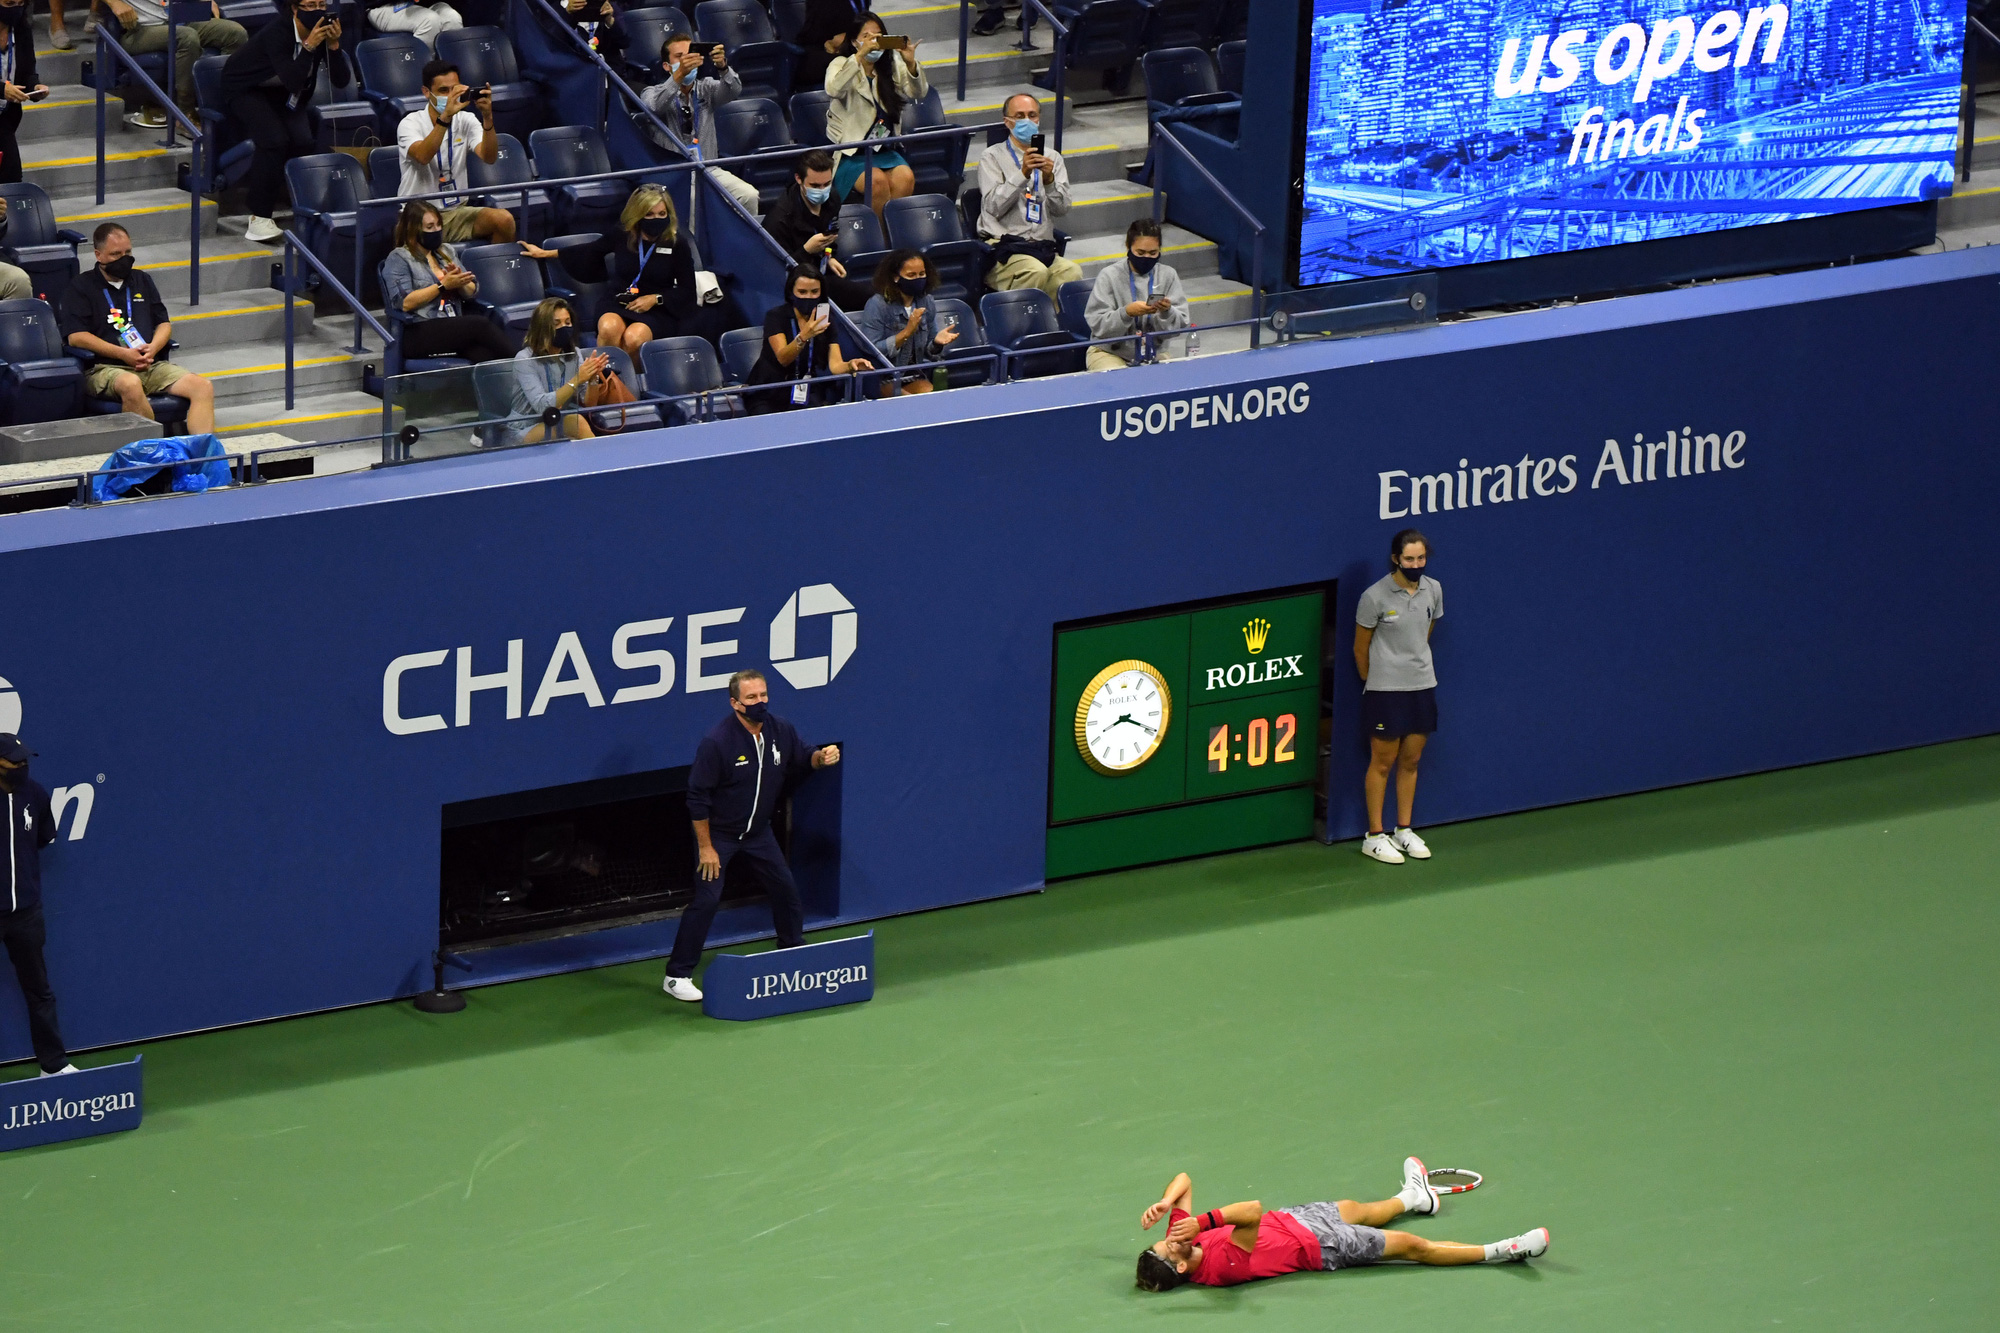 Chùm ảnh Dominic Thiem ngược dòng thắng, đăng quang US Open 2020 - Ảnh 15.